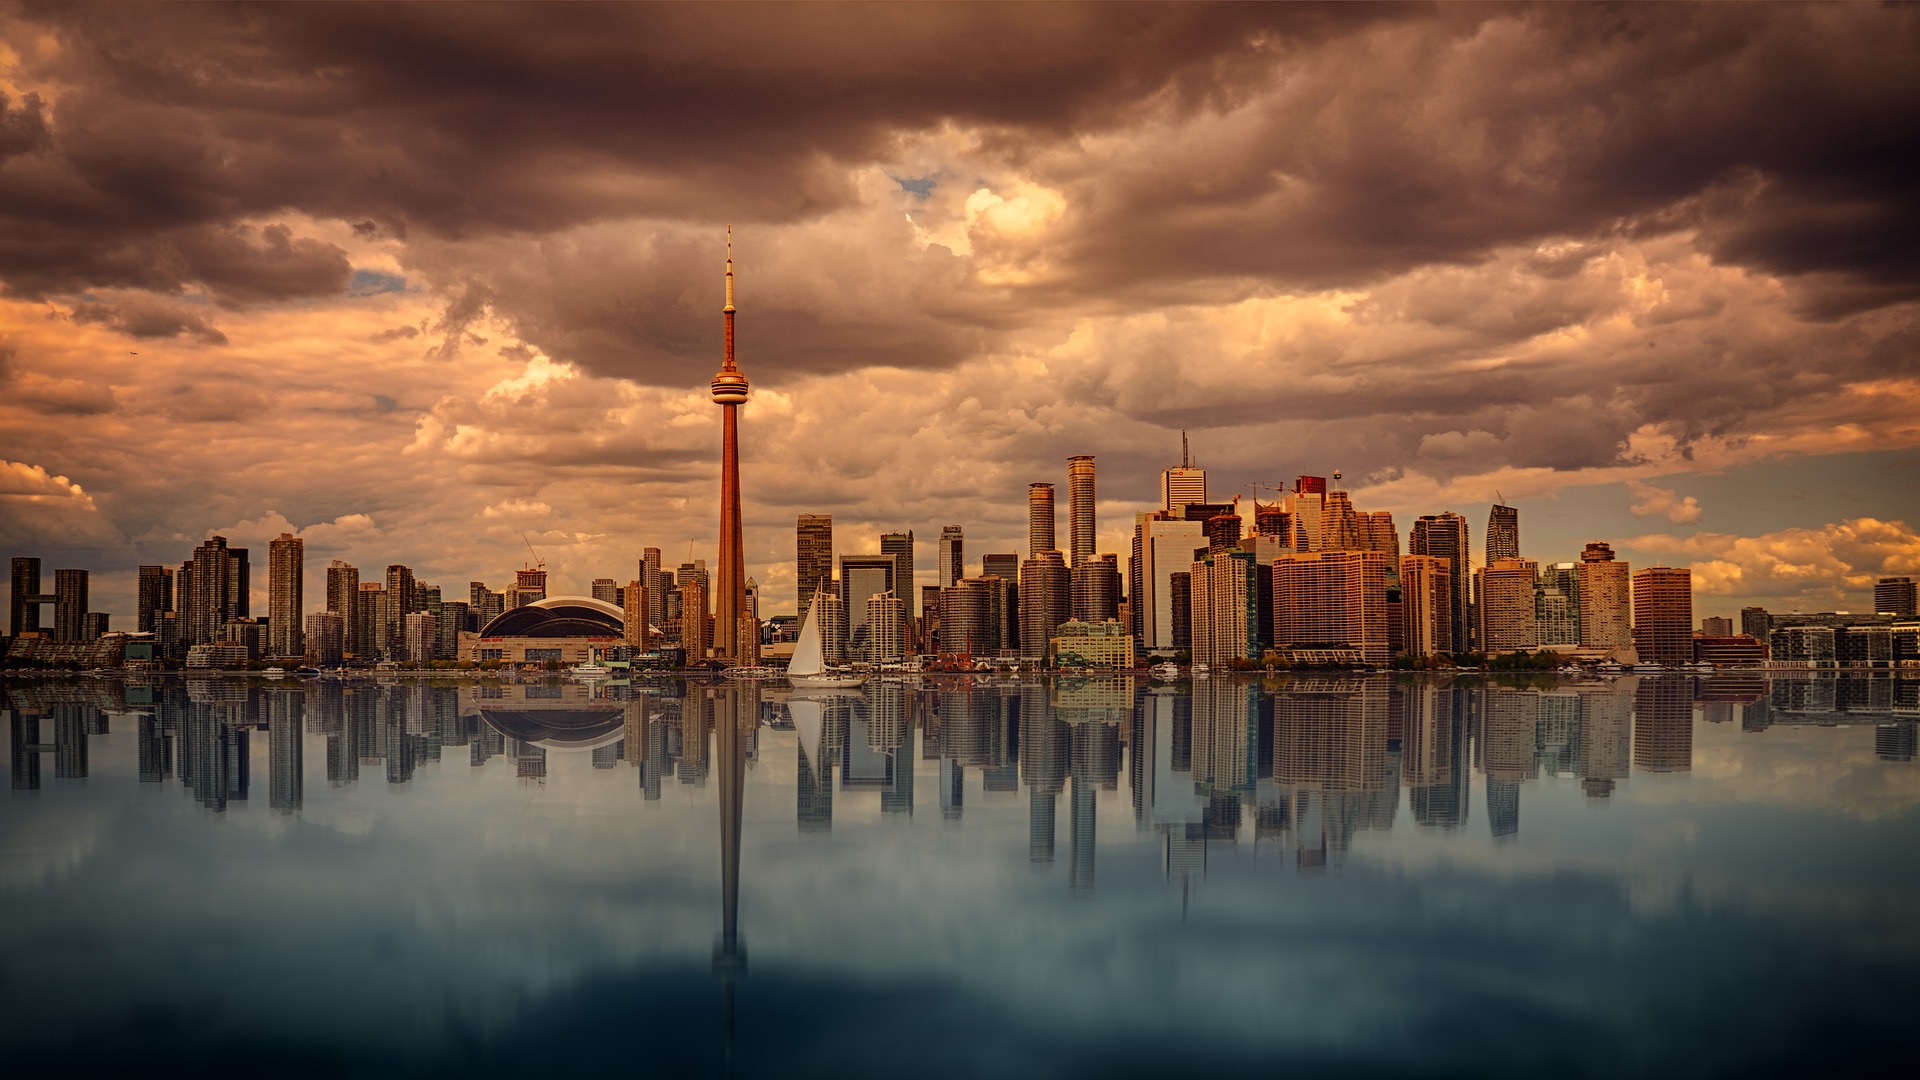 Torontos Skyline